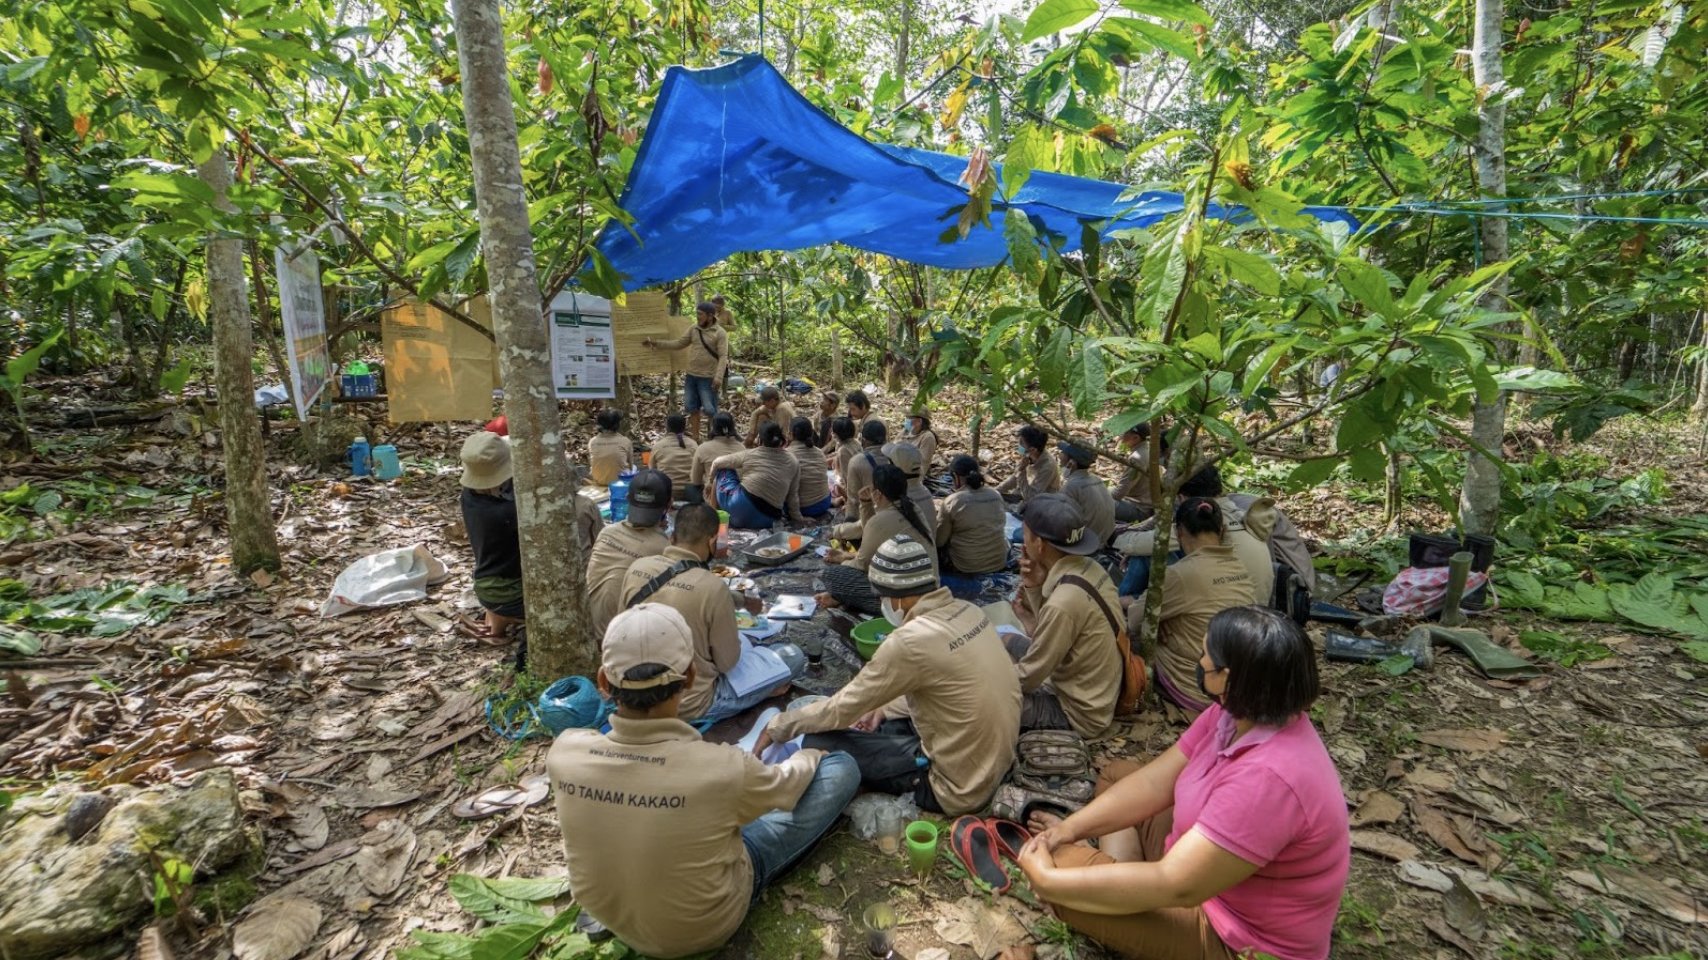 Teilnehmende der Cacao Field School sitzen im Wald auf dem Boden unter einer Plane